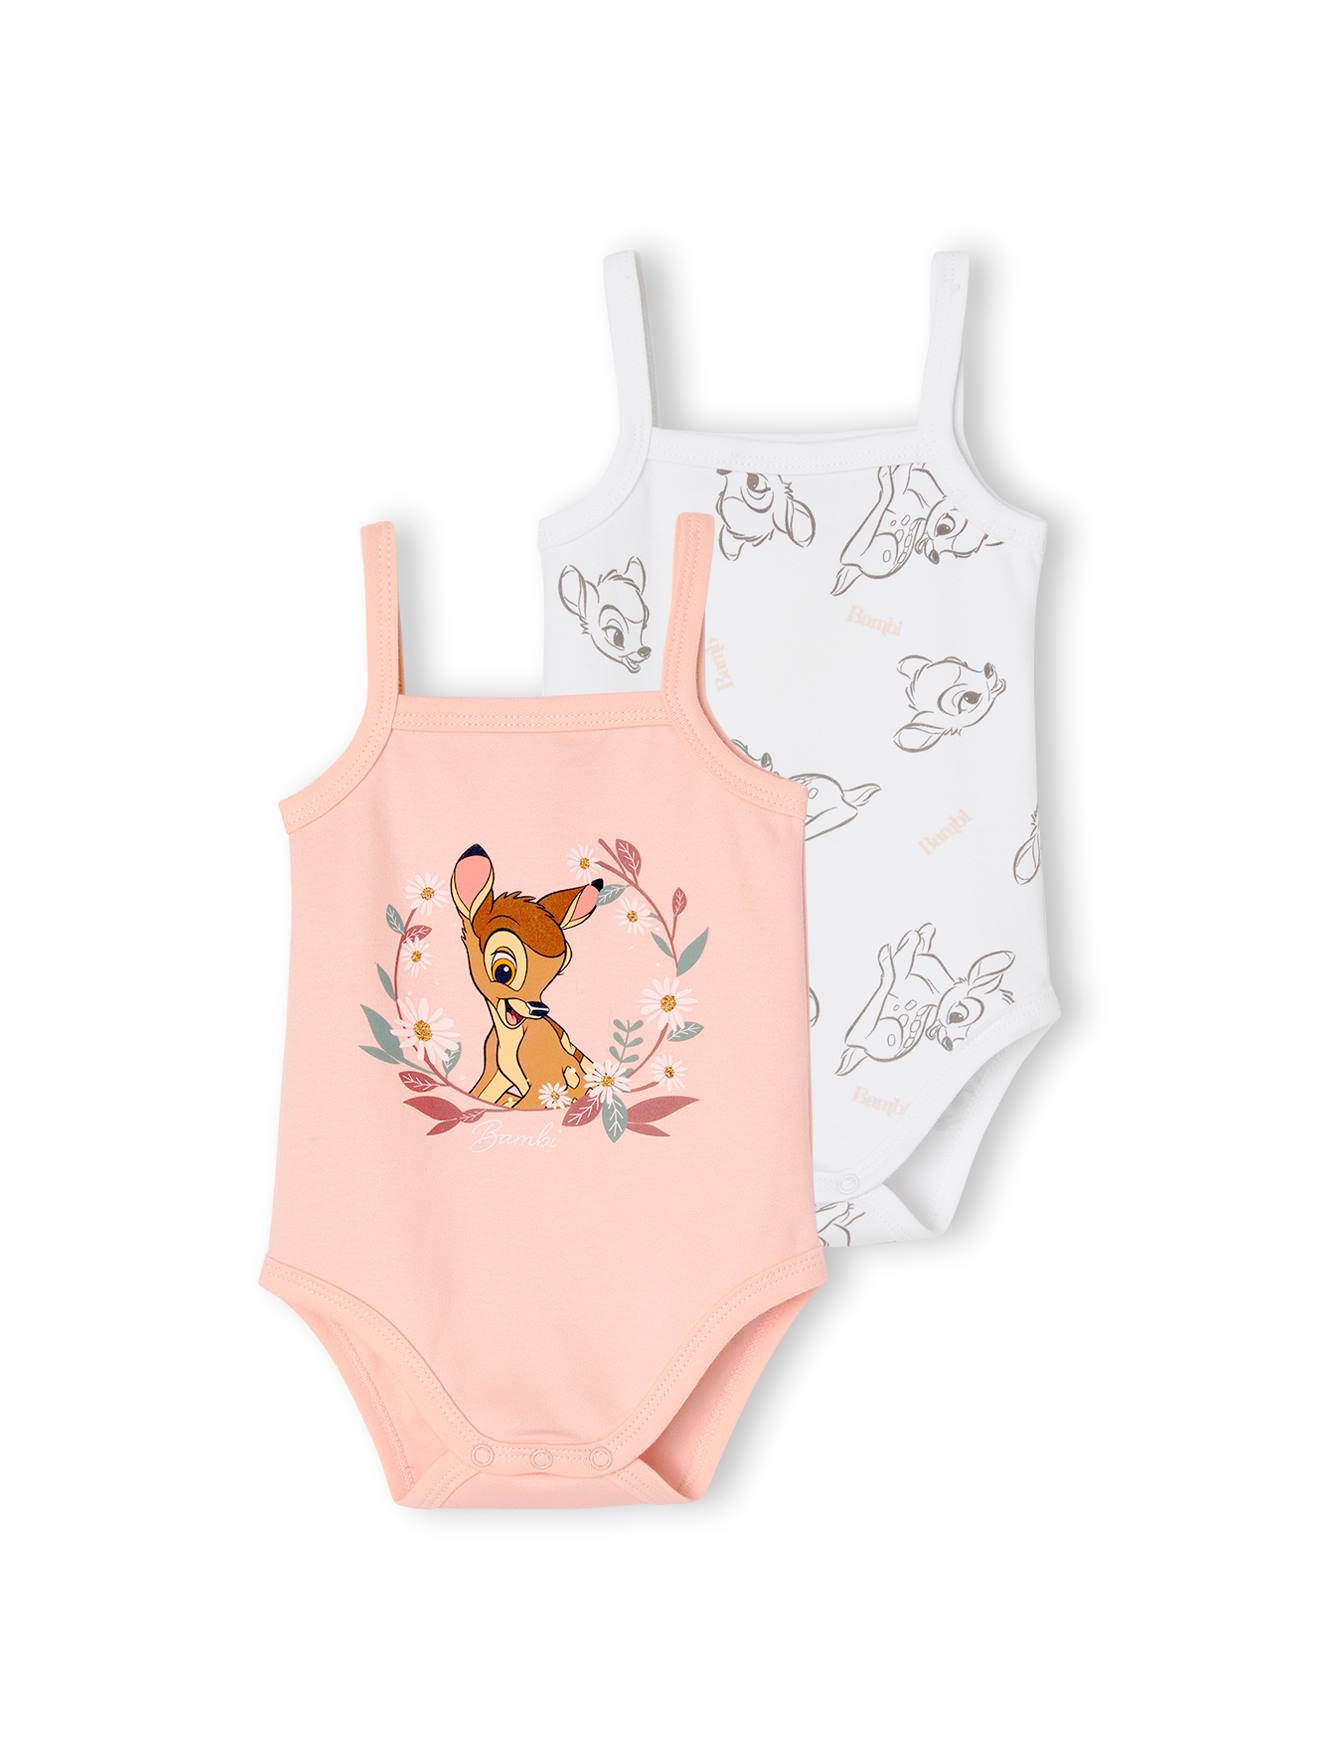 https://media.vertbaudet.com/Pictures/vertbaudet/257800/pack-of-2-bambi-by-disney-bodysuits-for-babies.jpg